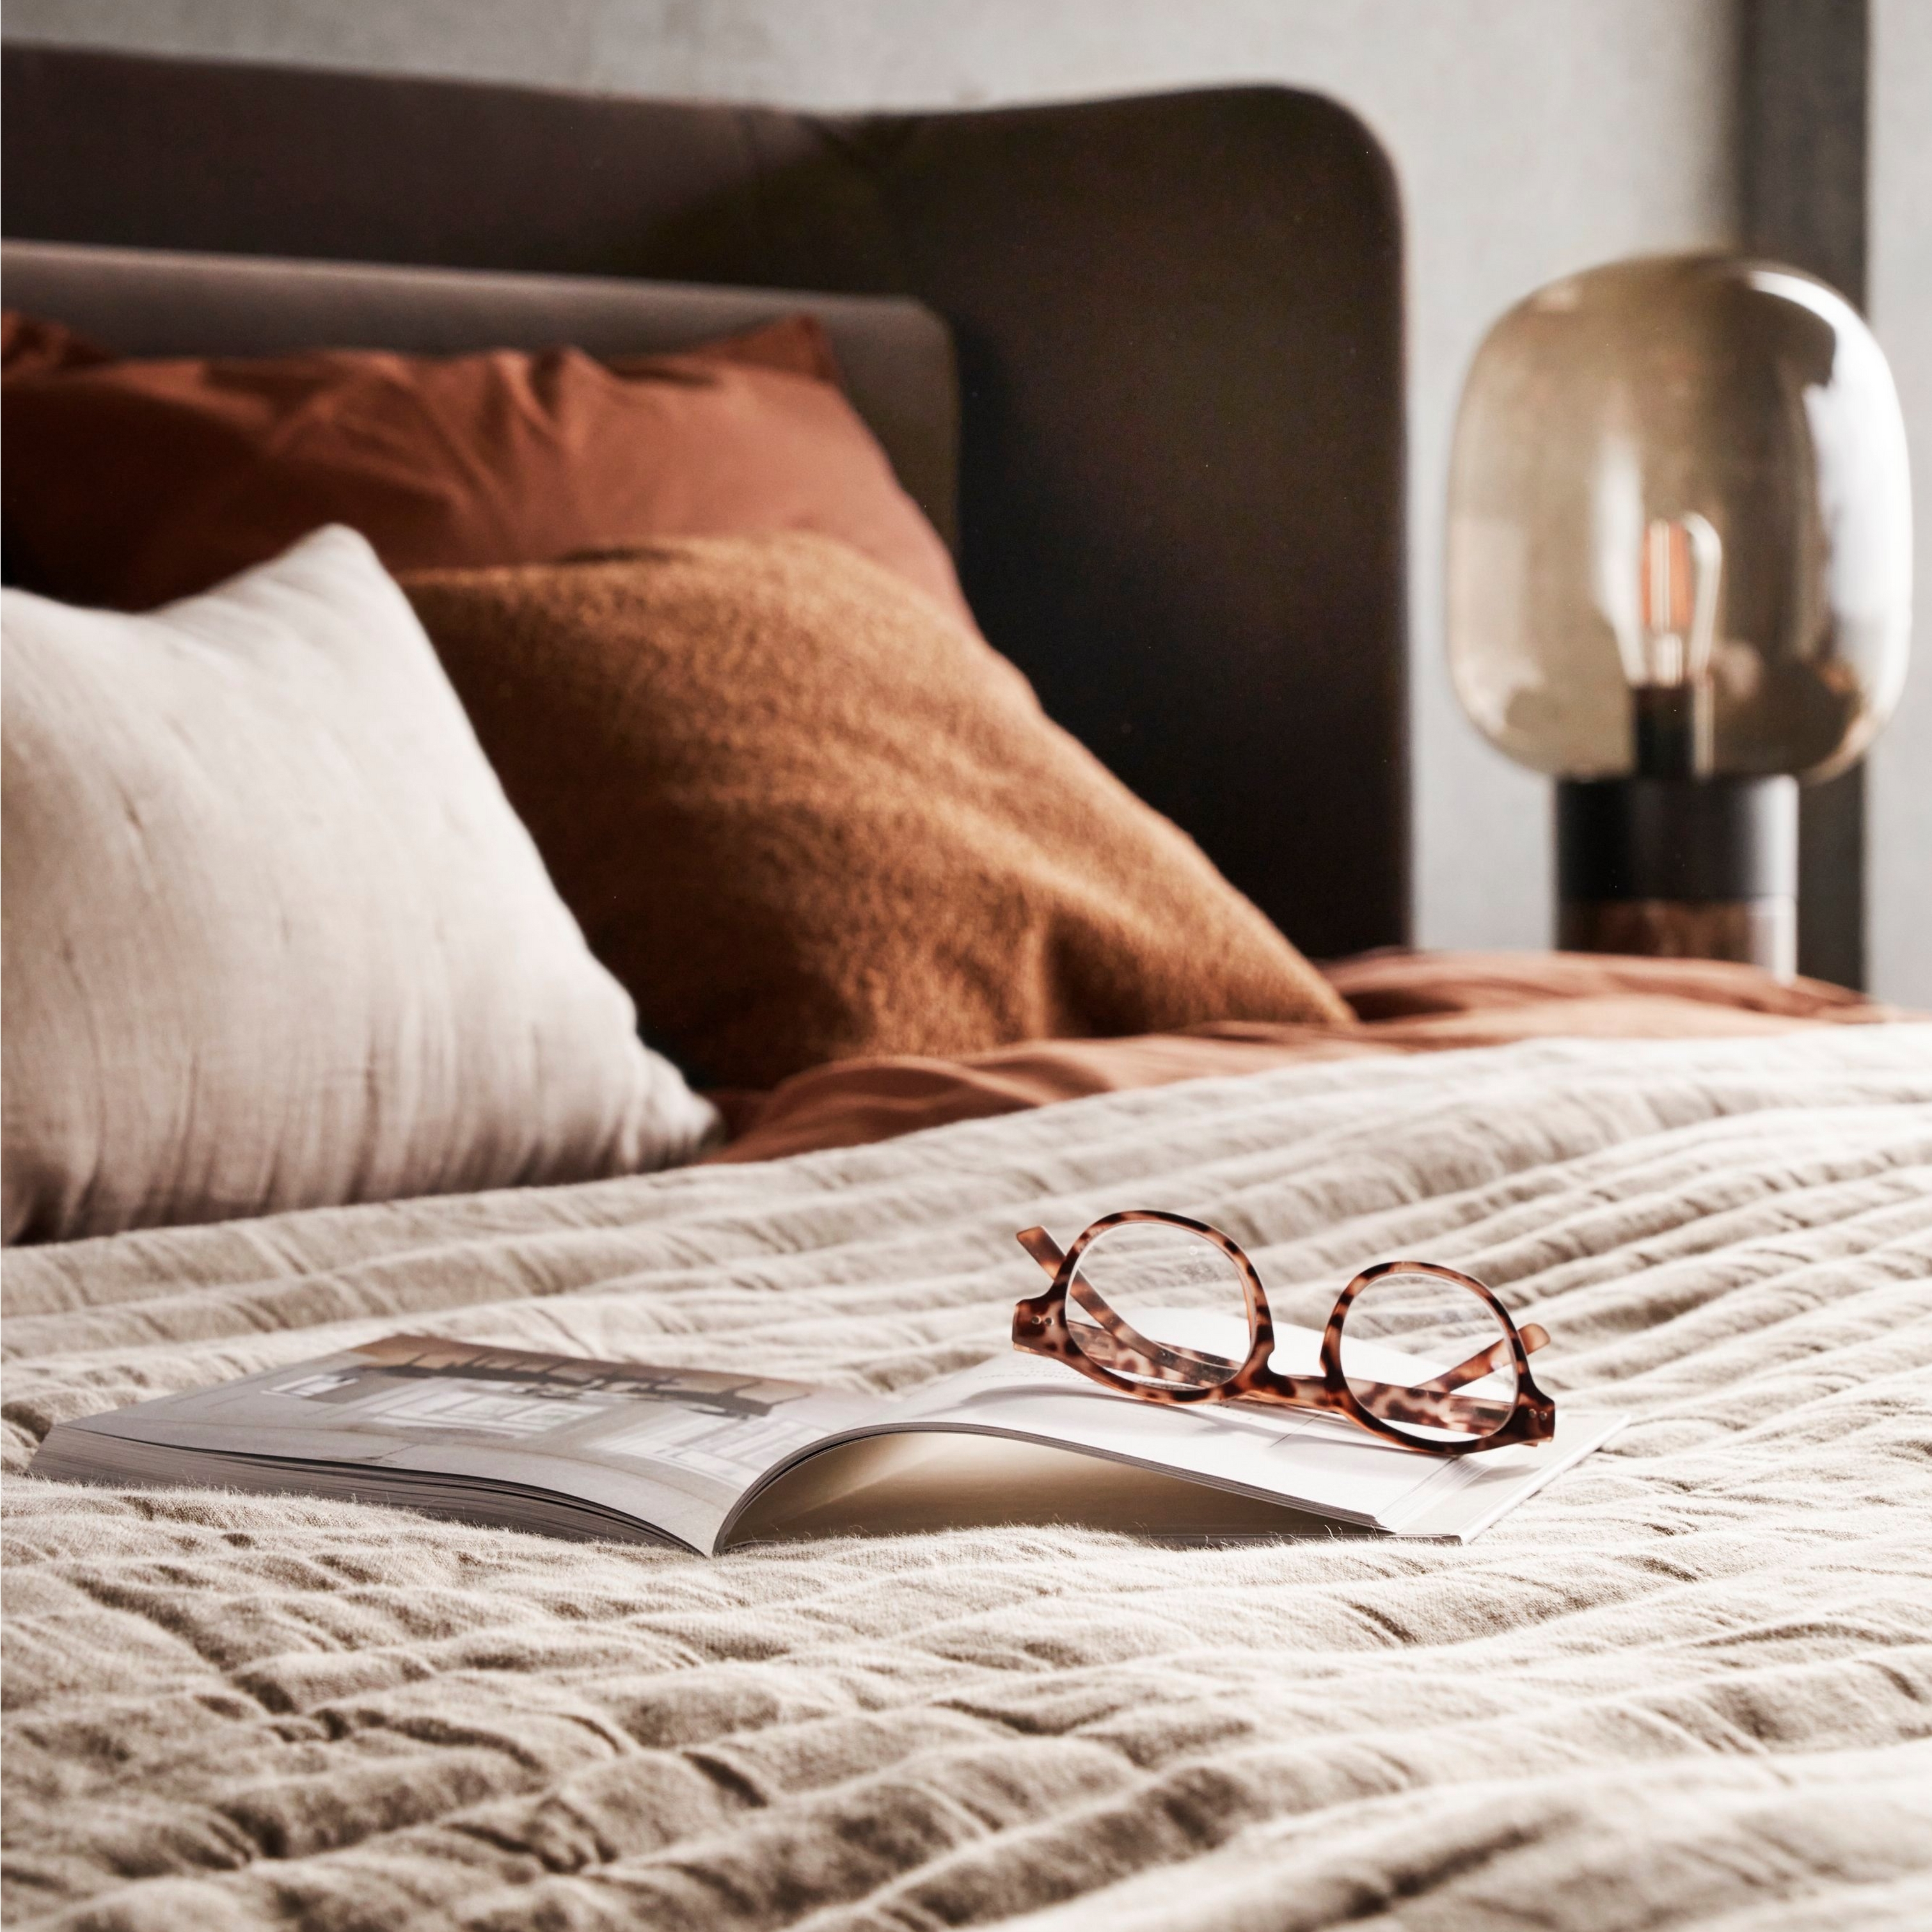 Bed met beddengoed met textuur, glazen op een open boek en zachte verlichting naast het bed.